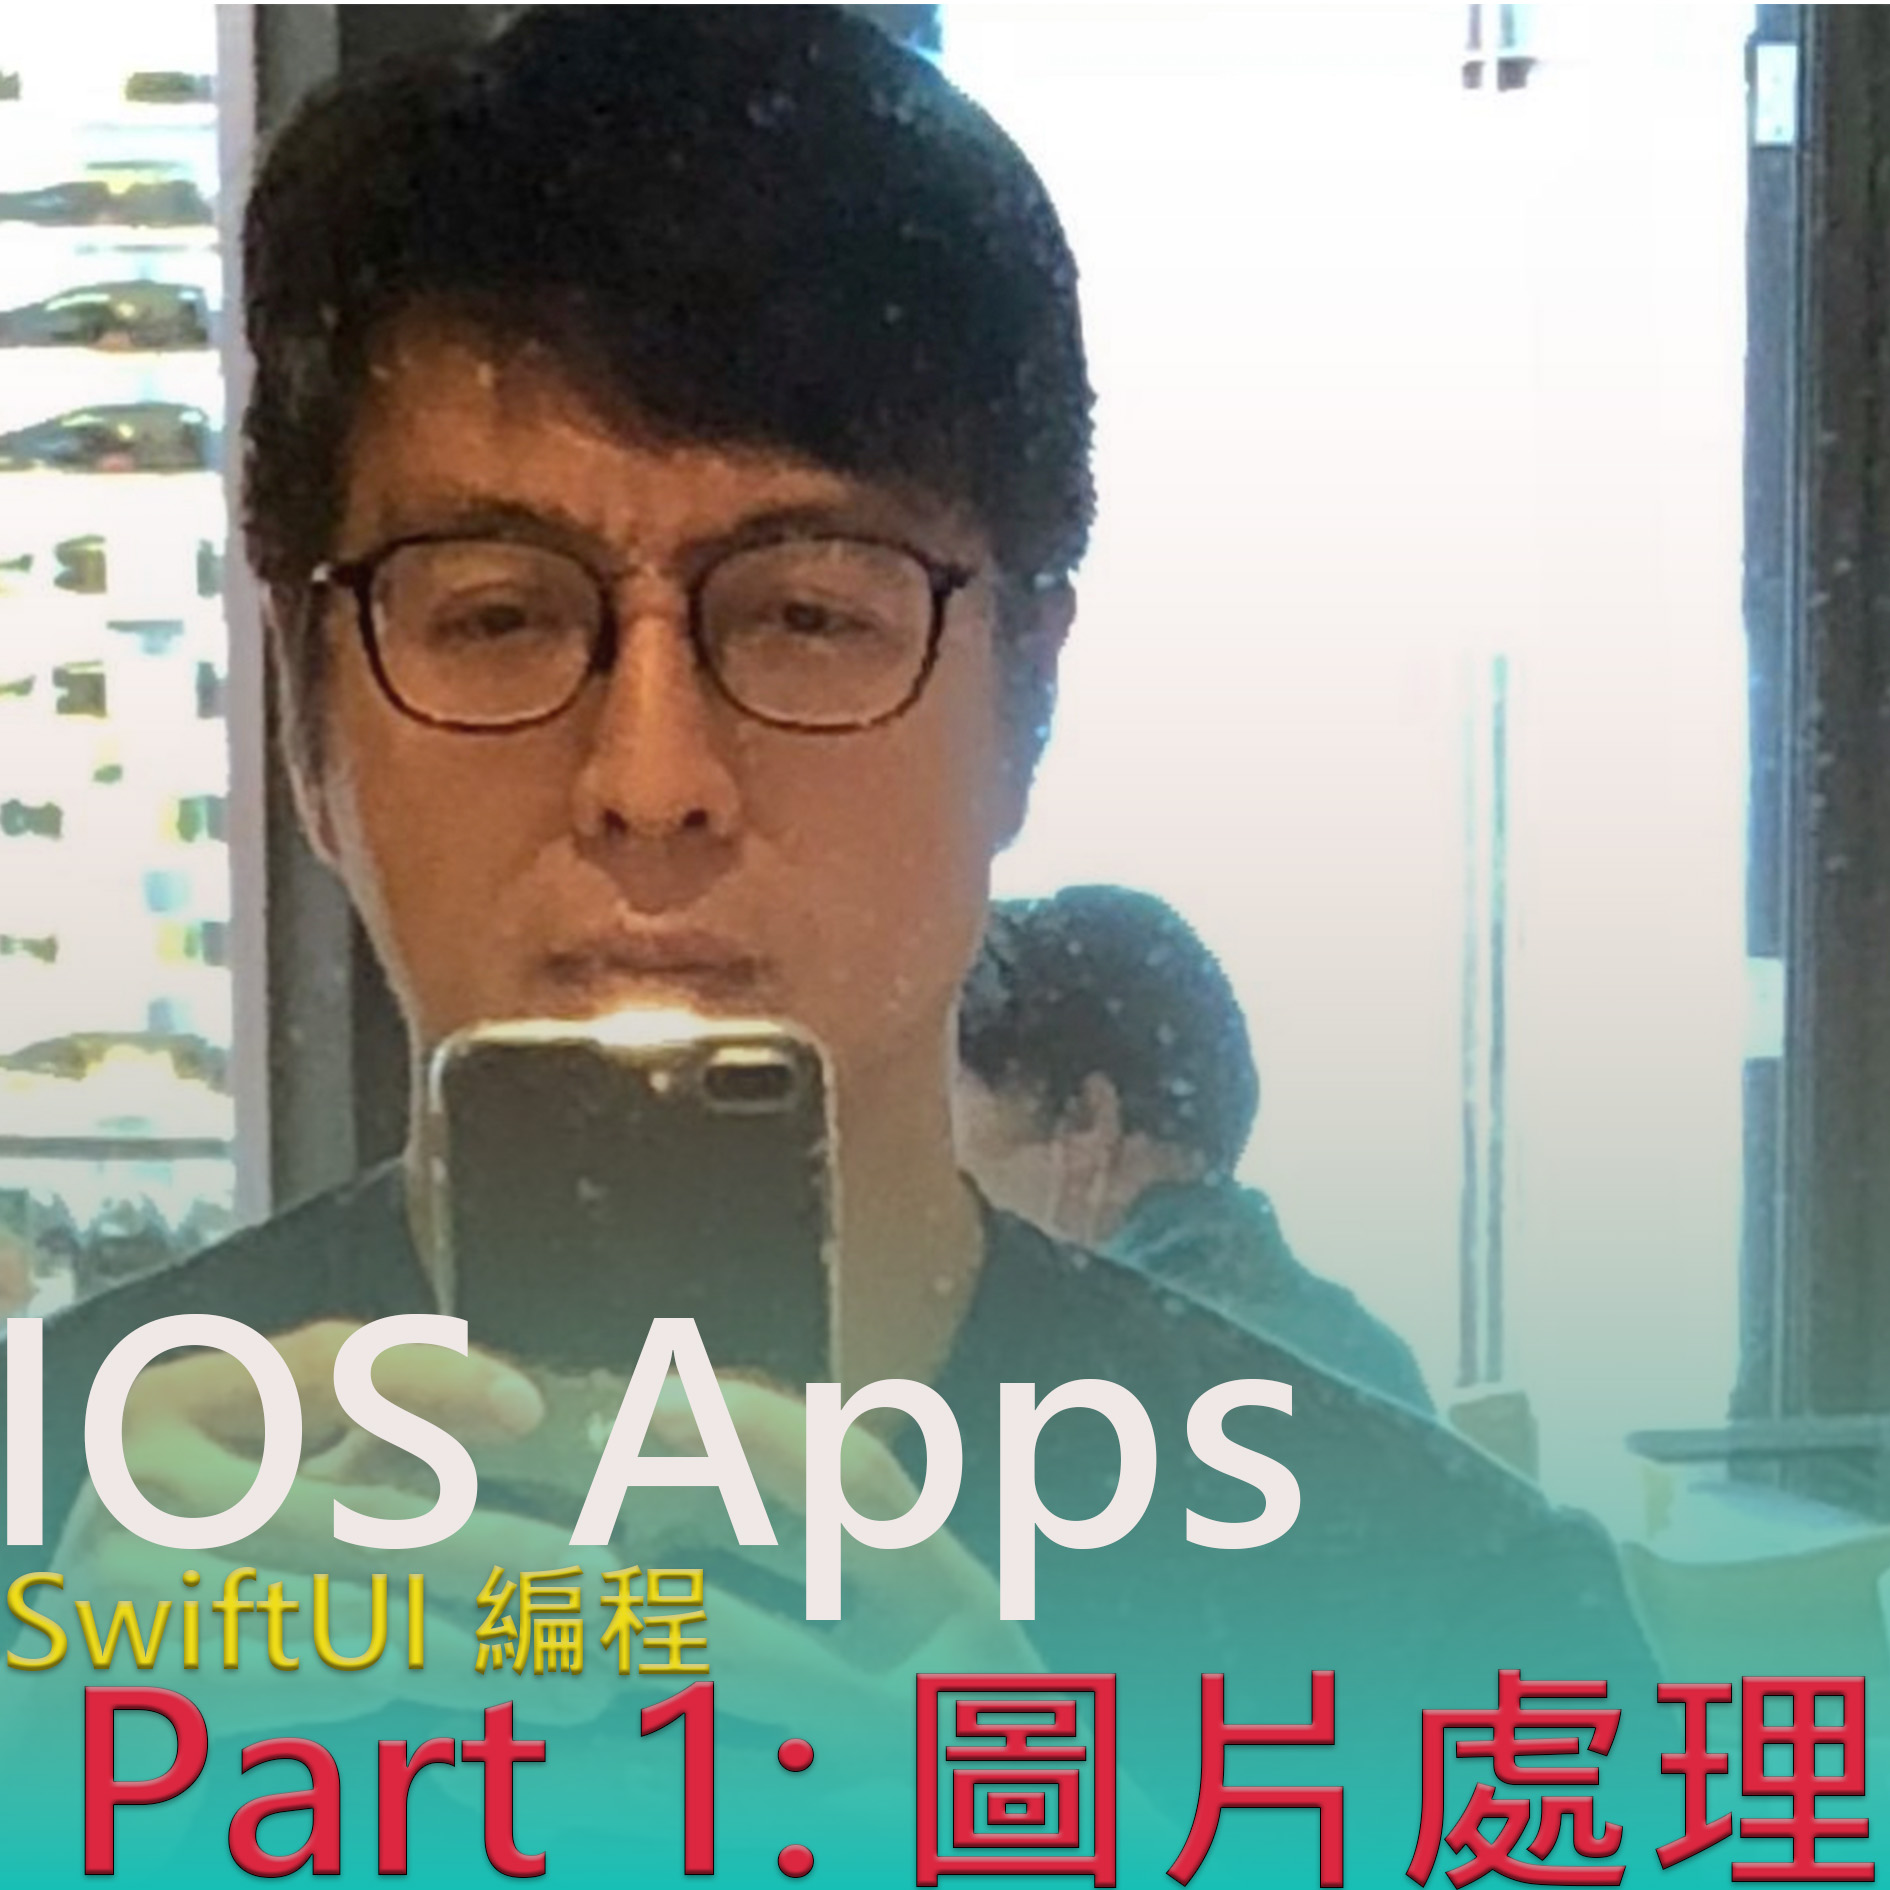 IOS Apps swiftUI 編程 — Part 1 圖片處理